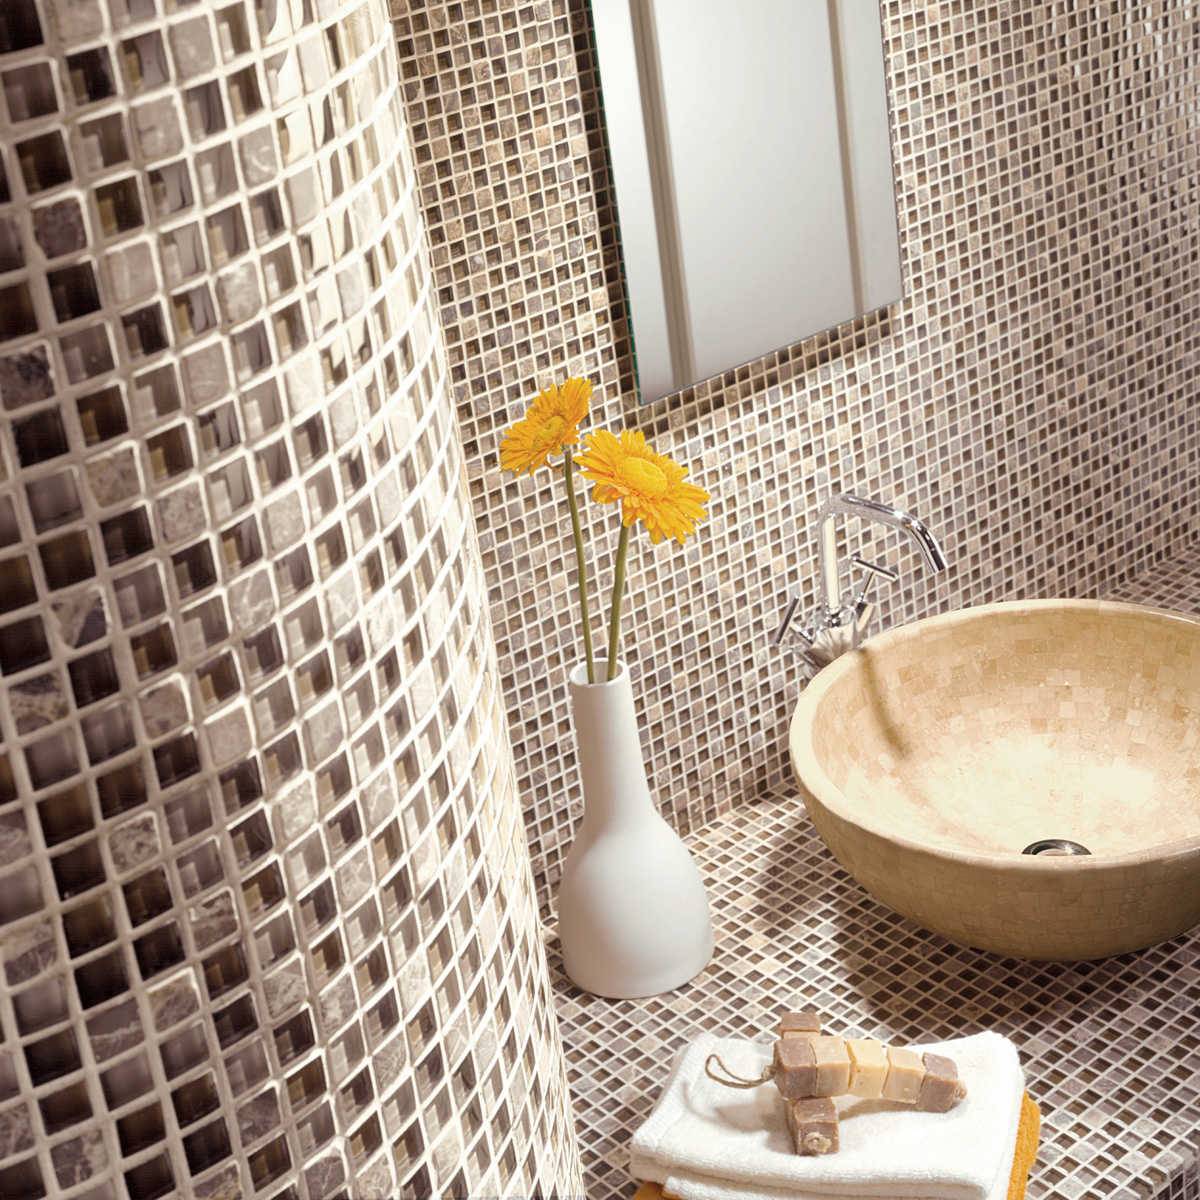 Плитка-мозаика для ванной, которую хочется купить в свой дом